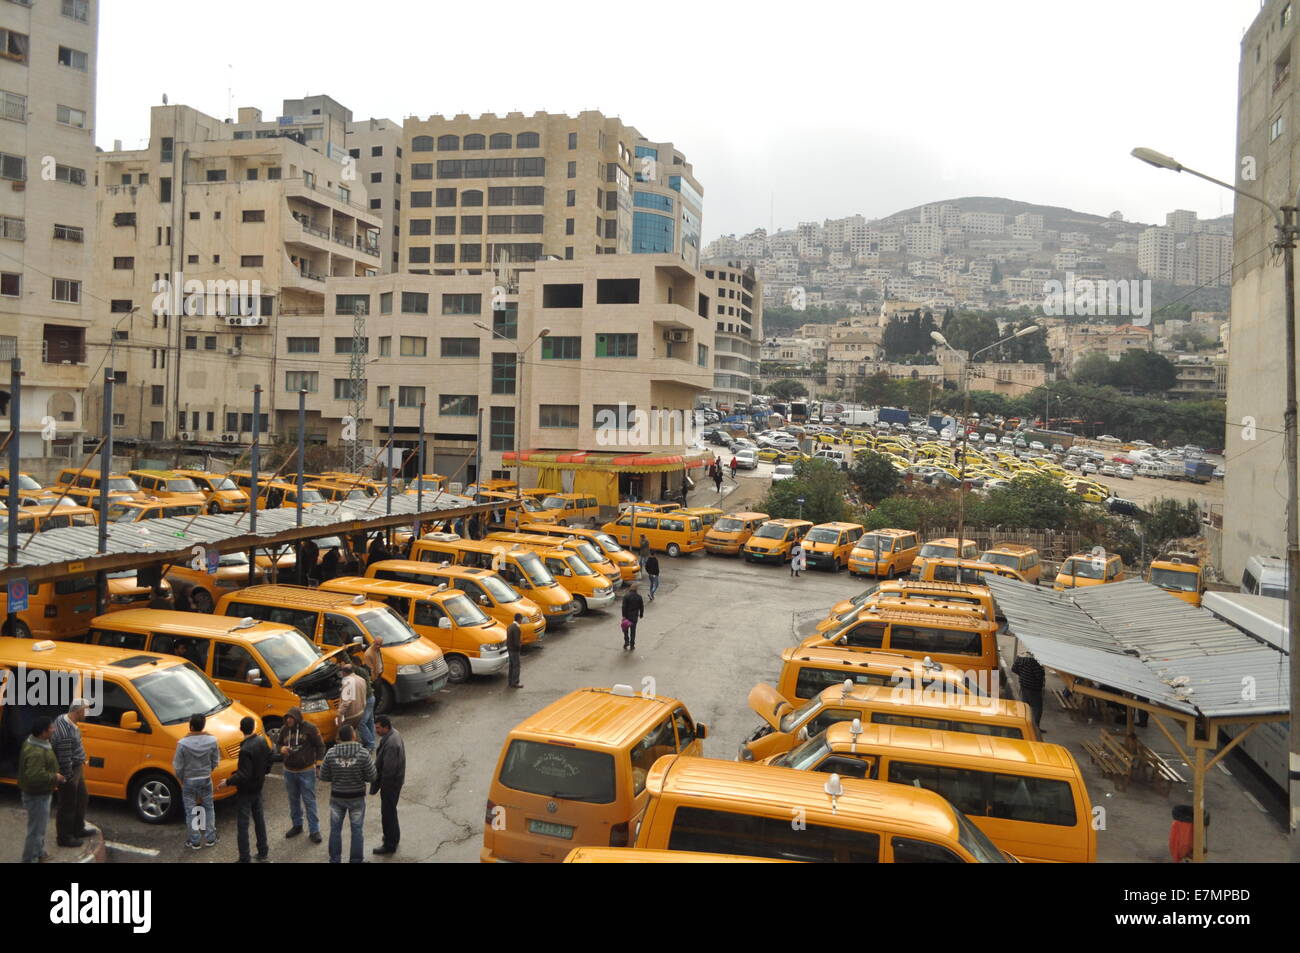 Stazione taxi in centro di Nablus, Palestina Foto Stock